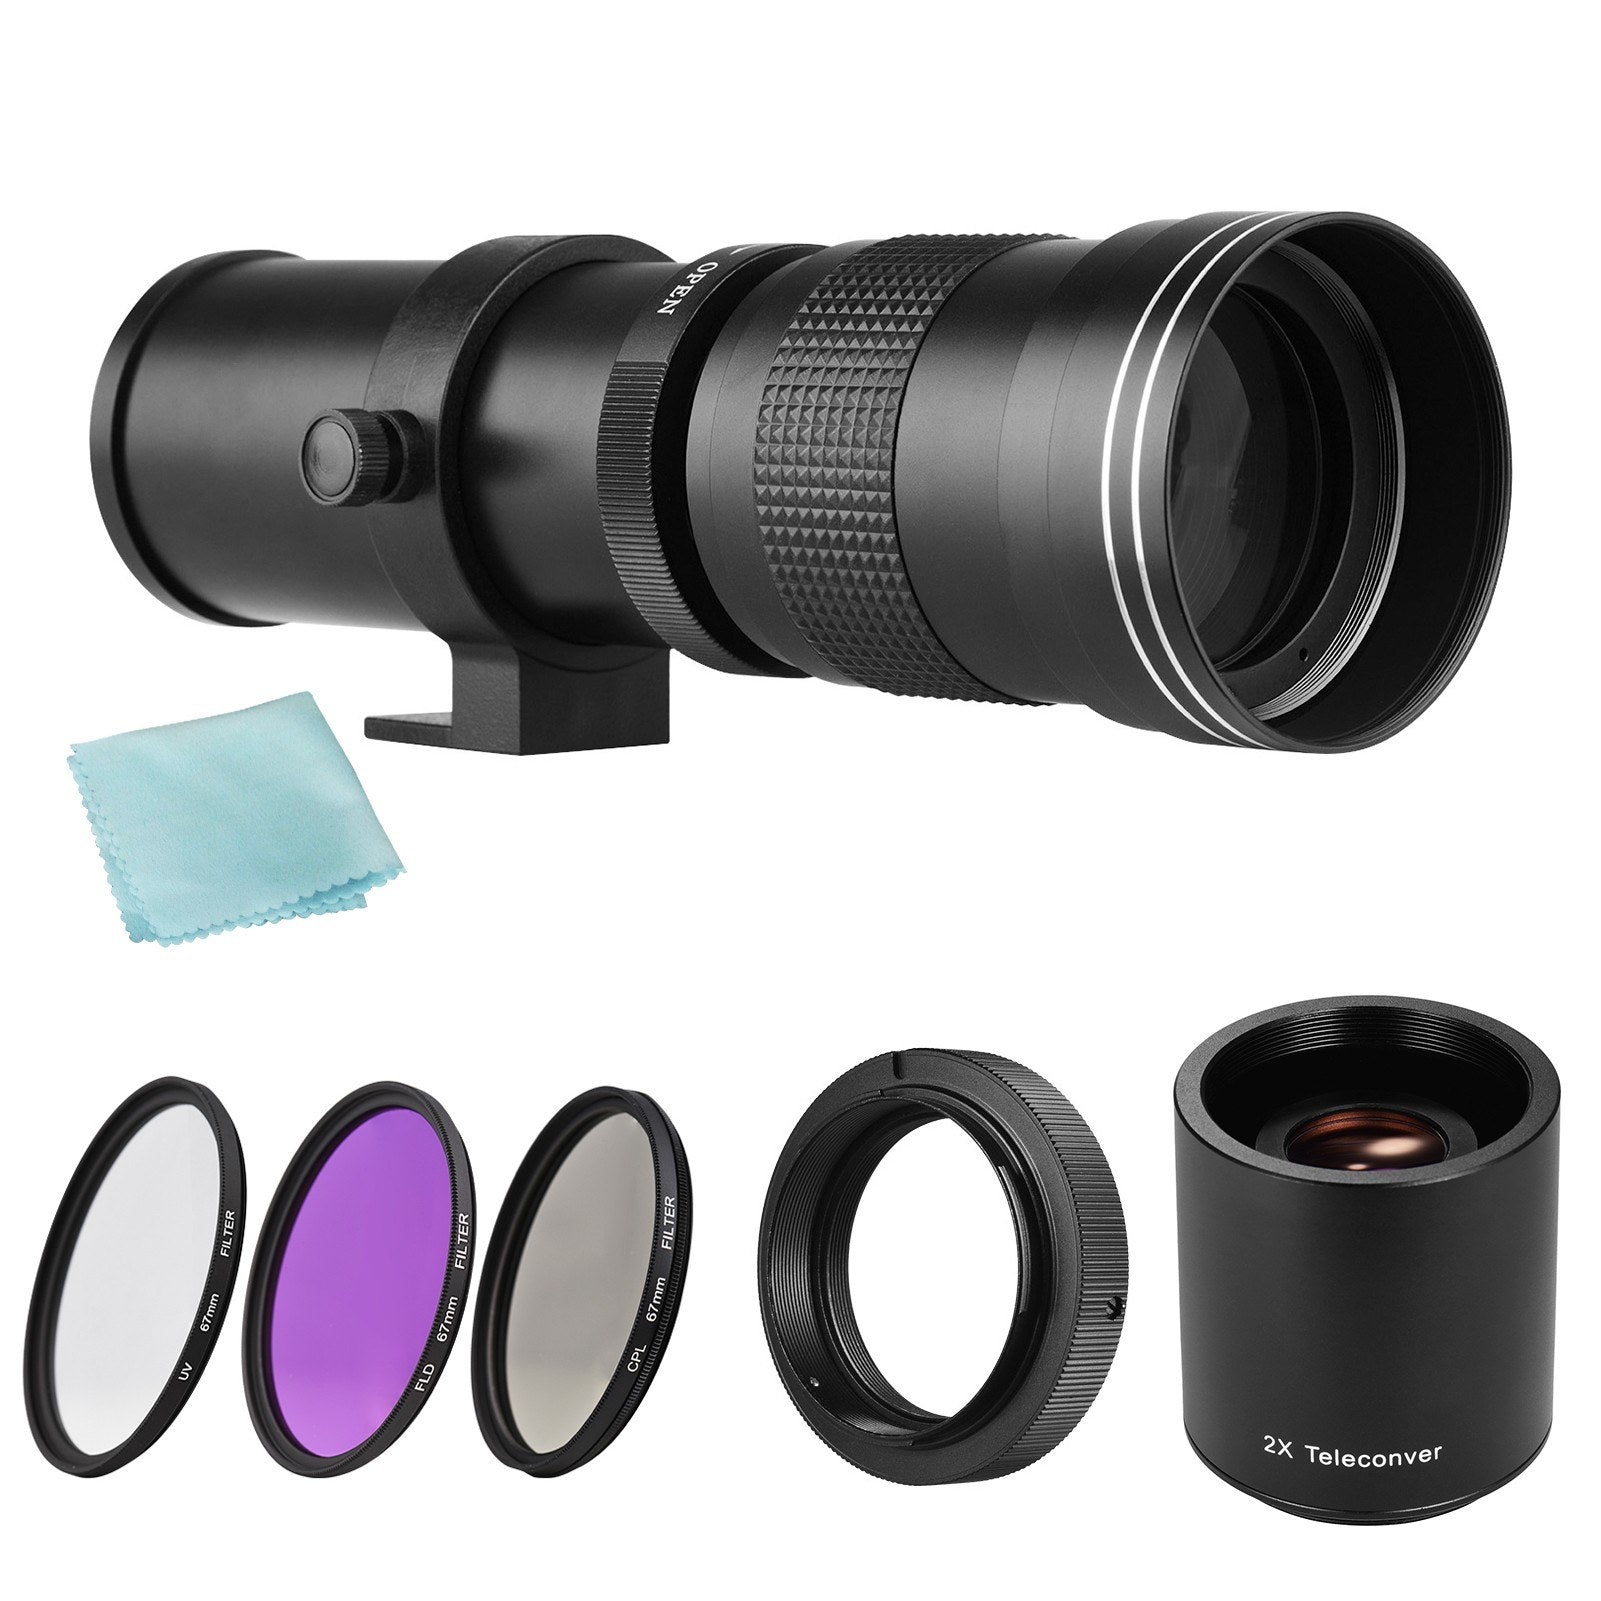 Camera MF Telephoto Zoom Lens F/8.3-16 420-800mm T Mount + UV/CPL/FLD Filters Set +2X 420-800mm Teleconverter Lens + T2-AF Adapter Ring for Sony AF Mount A900/A850/A700/A580/A560/A550/A500/A99/A77